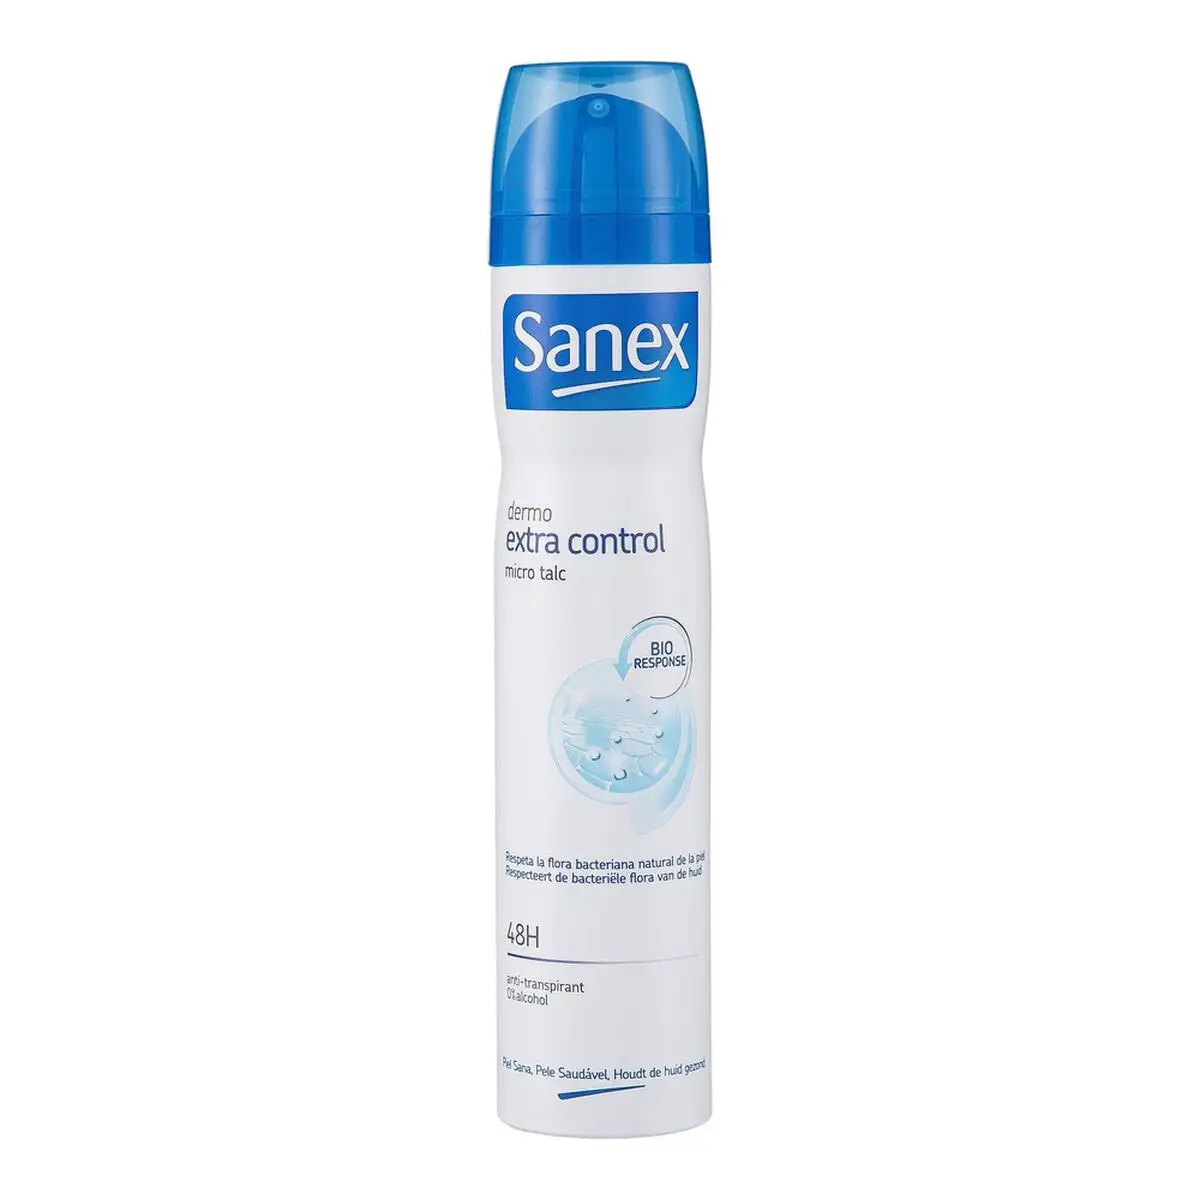 Spray deodorant dermo extra control sanex 200 ml _3531. DIAYTAR SENEGAL - Là où le Chic Rencontre la Tradition. Naviguez à travers notre catalogue et choisissez des produits qui équilibrent l'élégance intemporelle et l'innovation moderne.